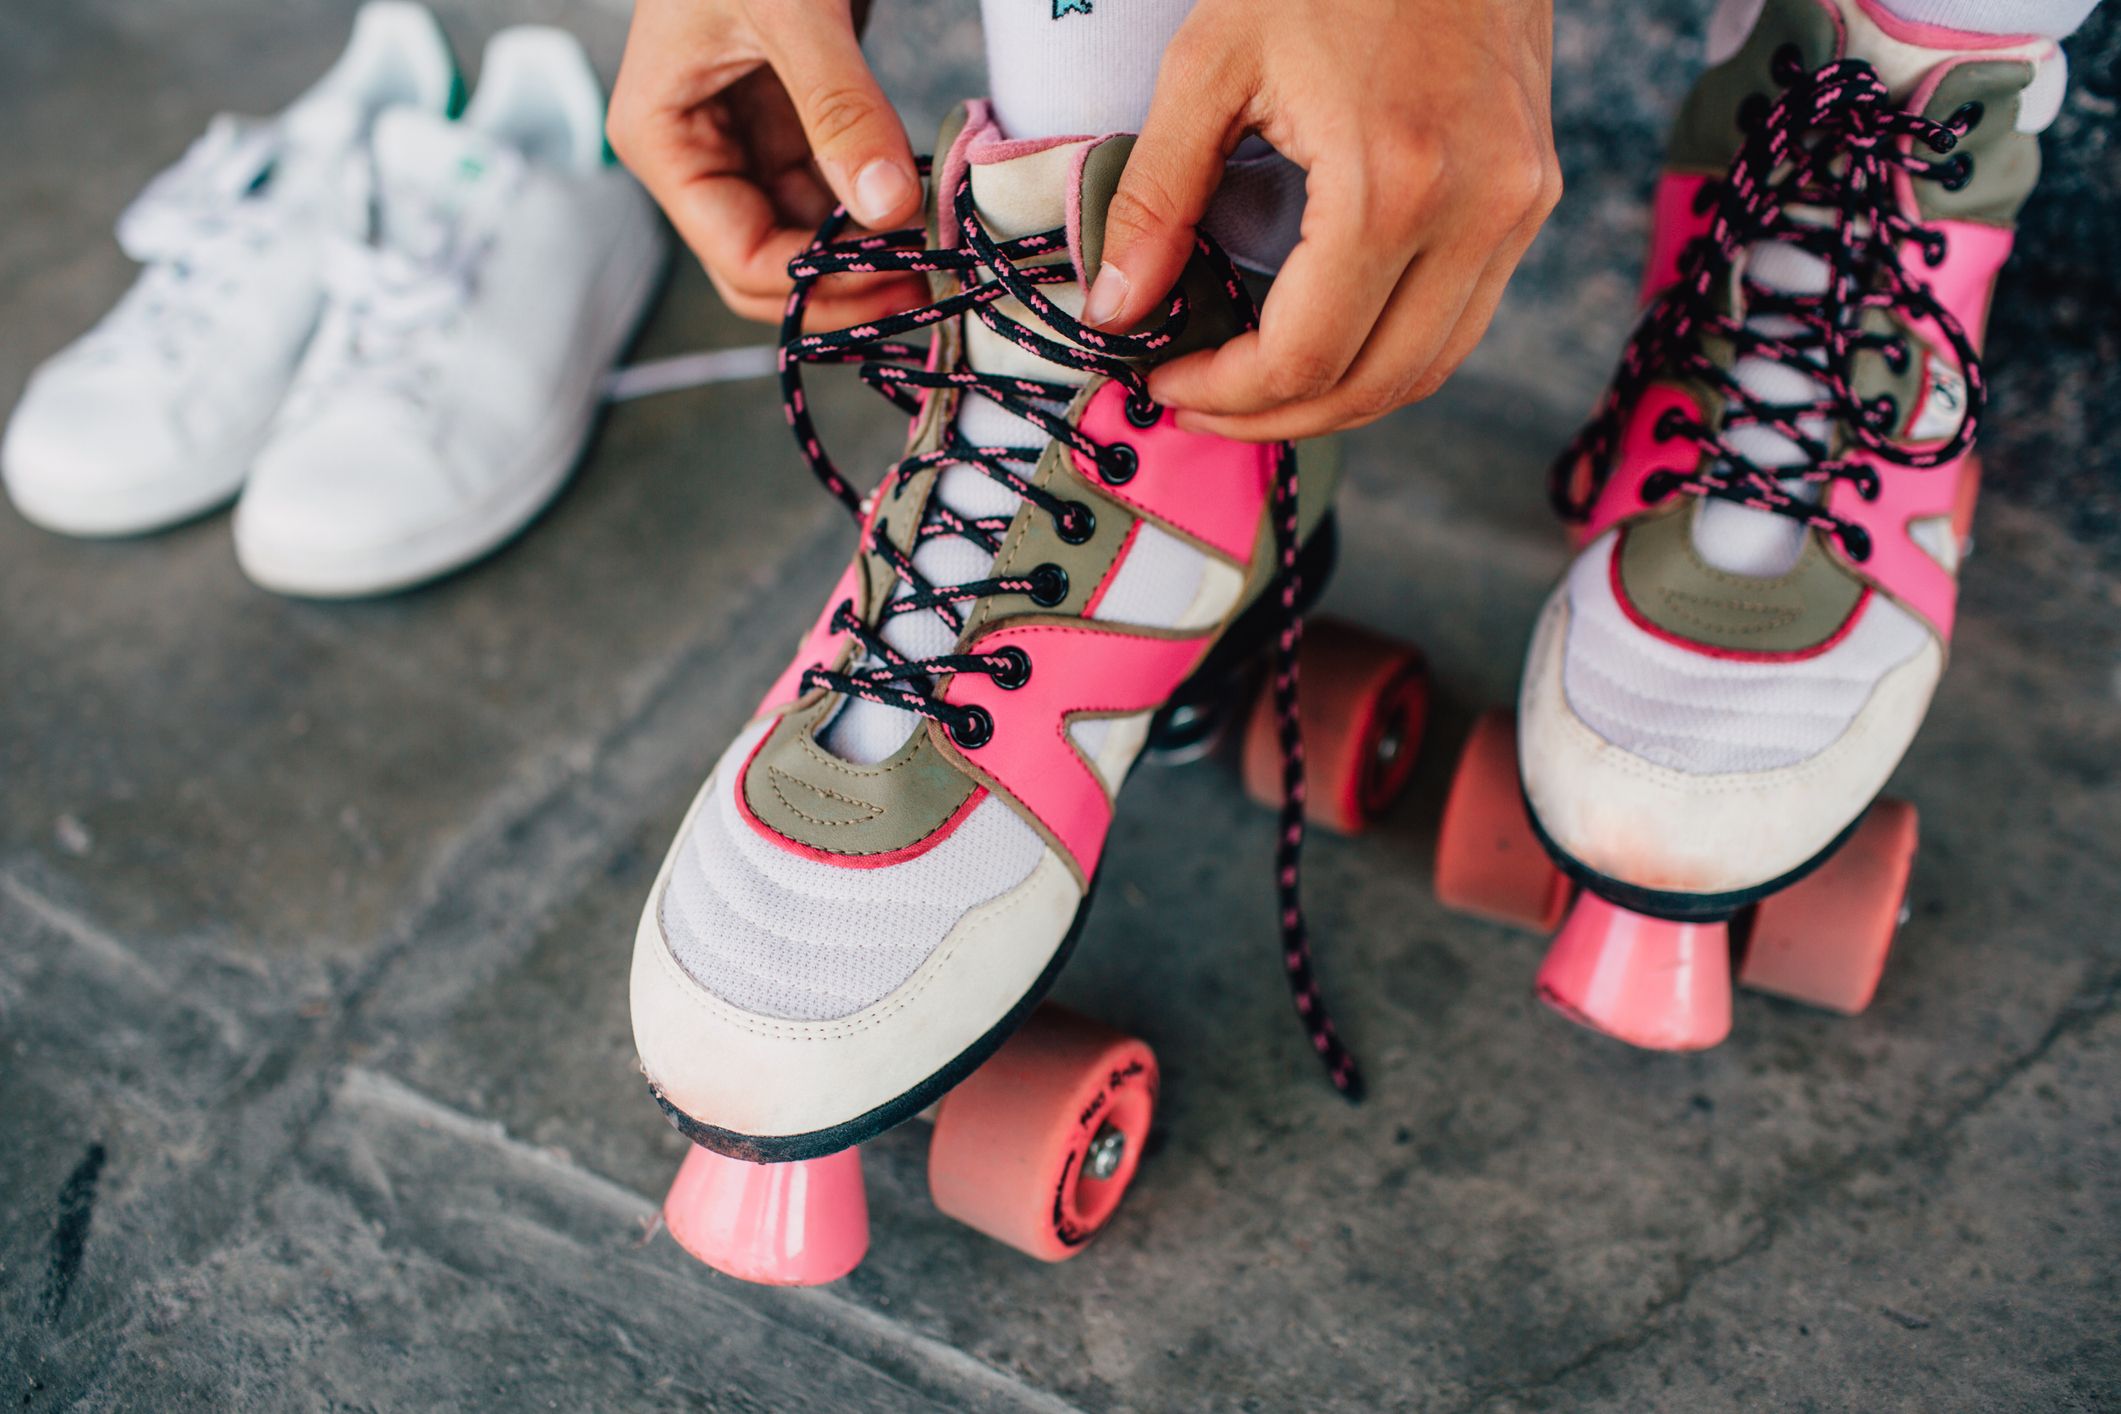 Rolschaatsen skeeleren goede alternatieve training hardlopers